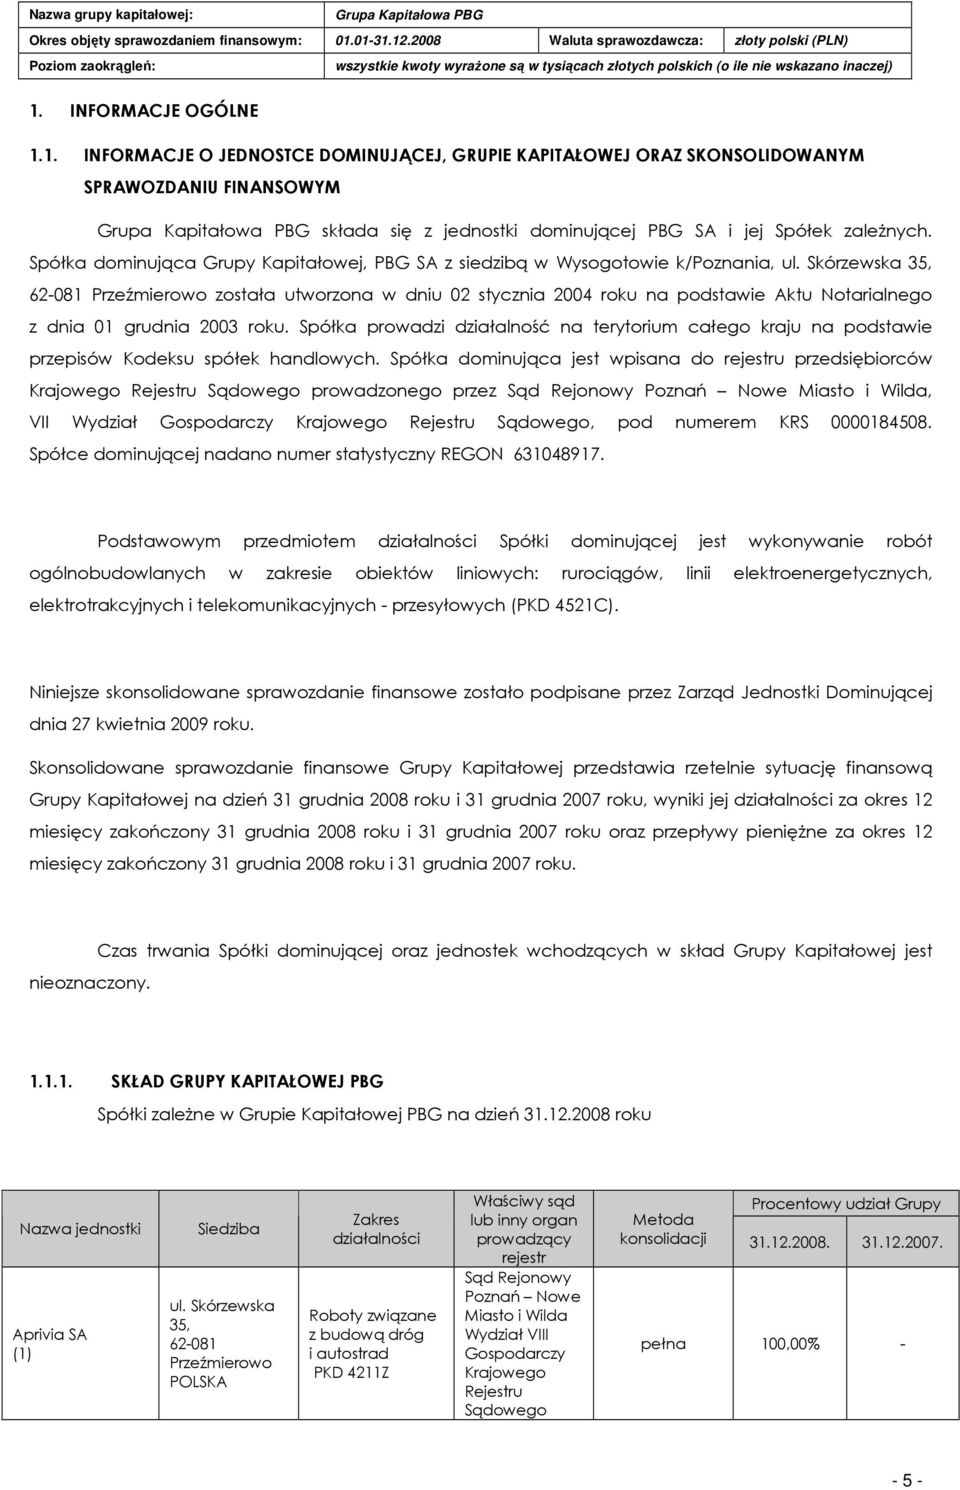 Skórzewska 35, 62-081 Przeźmierowo została utworzona w dniu 02 stycznia 2004 roku na podstawie Aktu Notarialnego z dnia 01 grudnia 2003 roku.